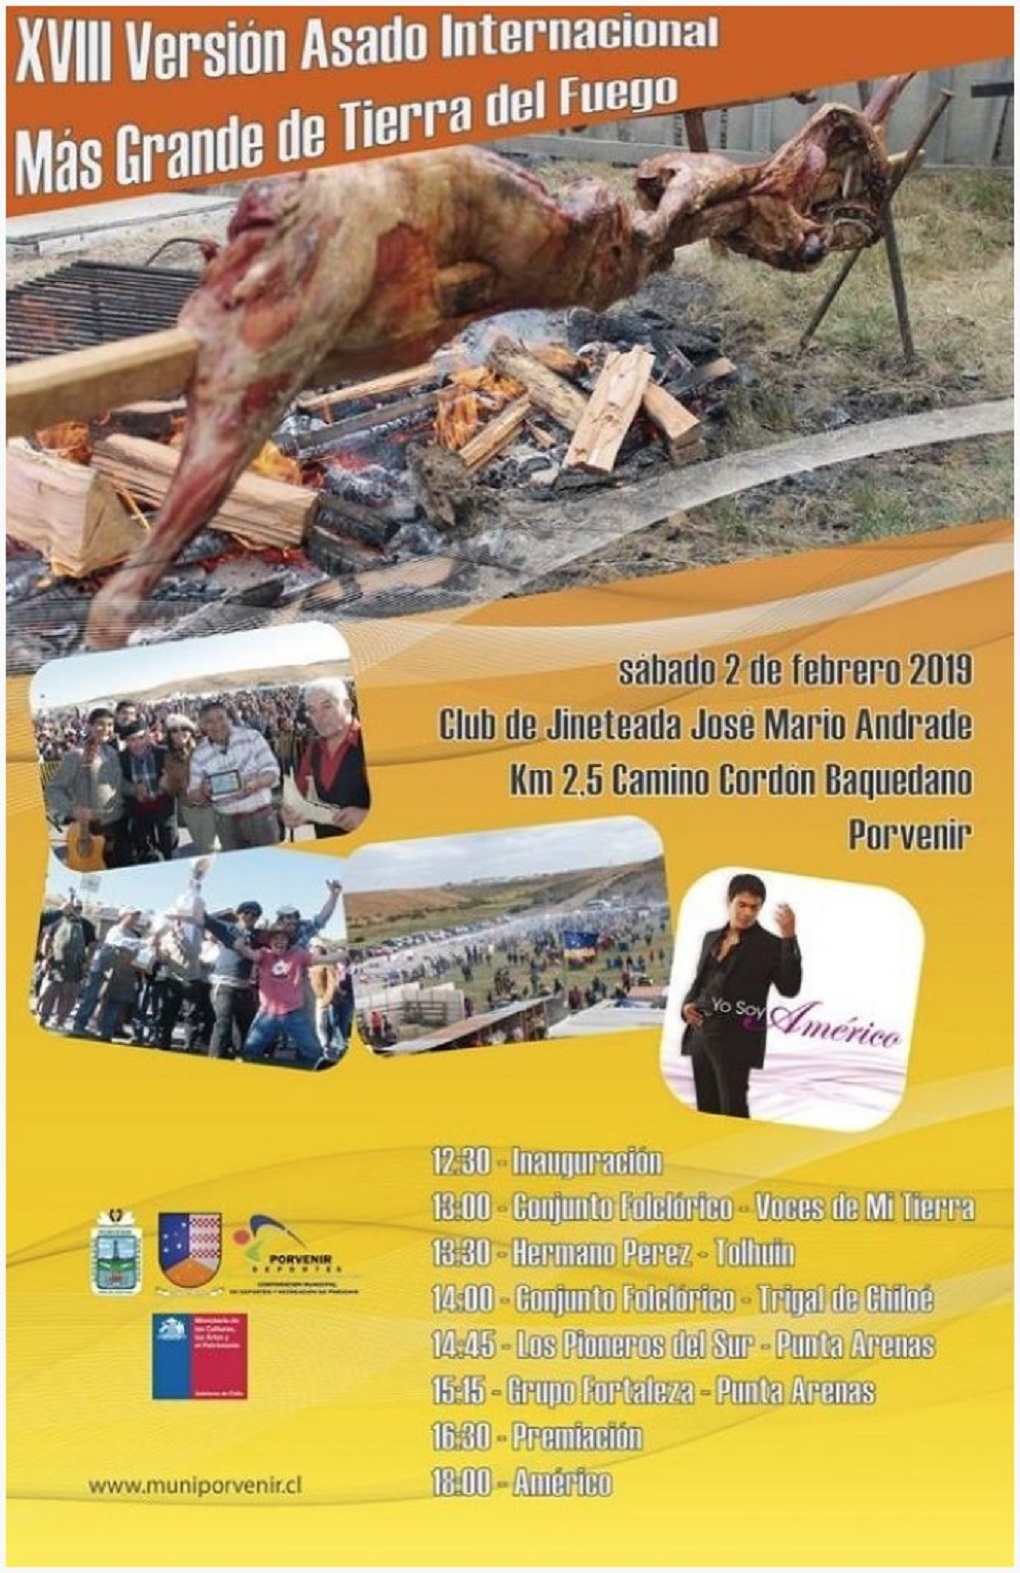 El sábado 2 de febrero se efectuará el tradicional Asado Internacional Más Grande de Tierra del Fuego